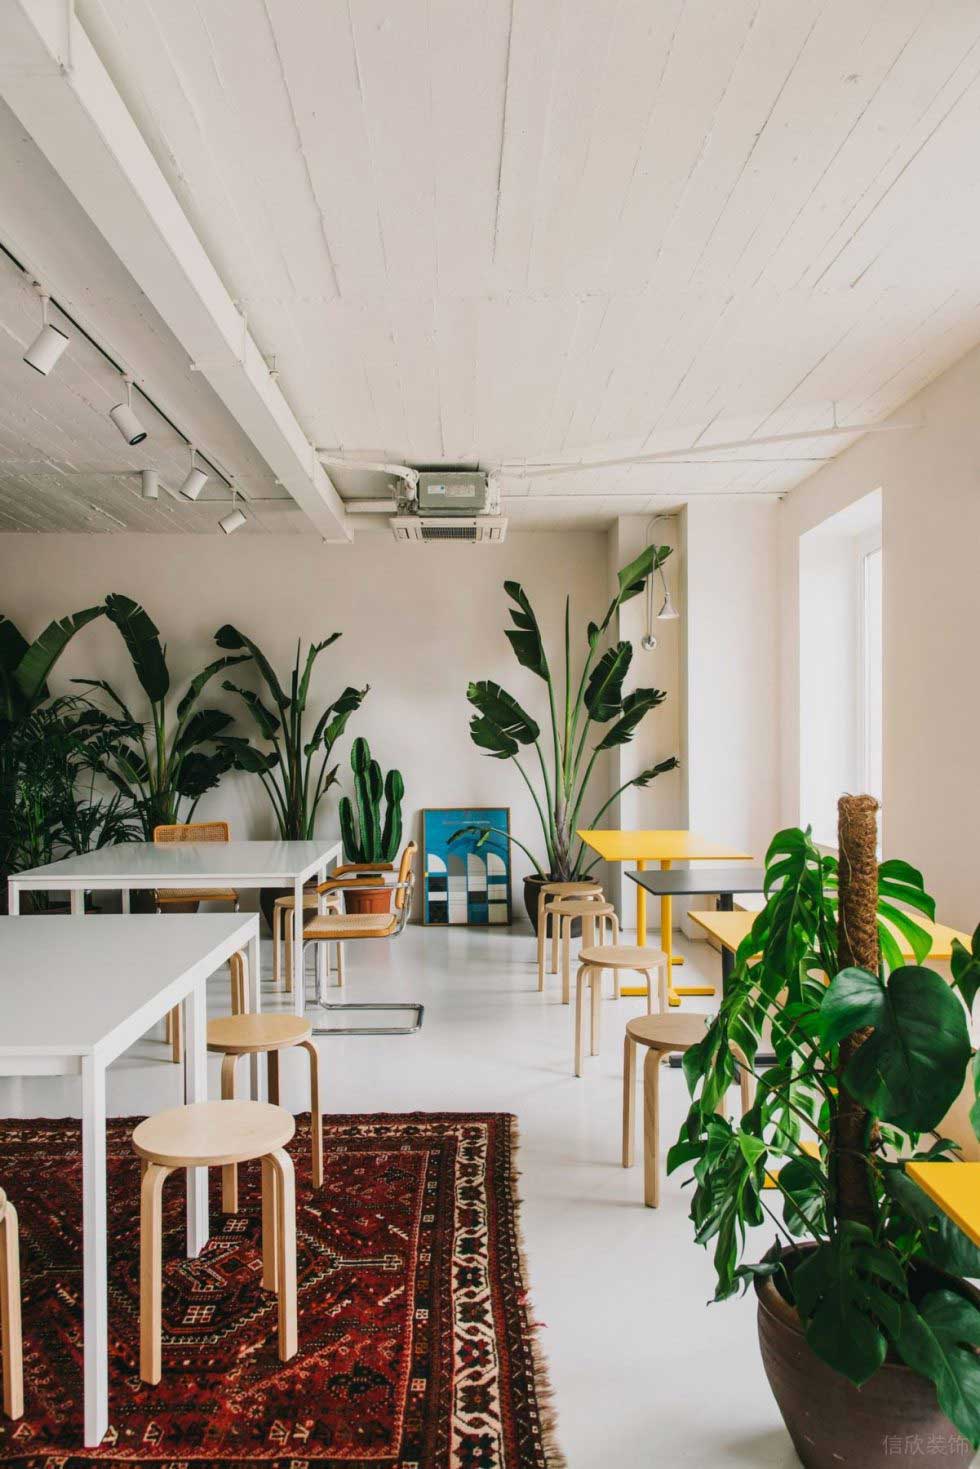 深圳龙华优品文化创意园800平方米极简主义自然风办公室装修案例员工餐厅绿植装饰